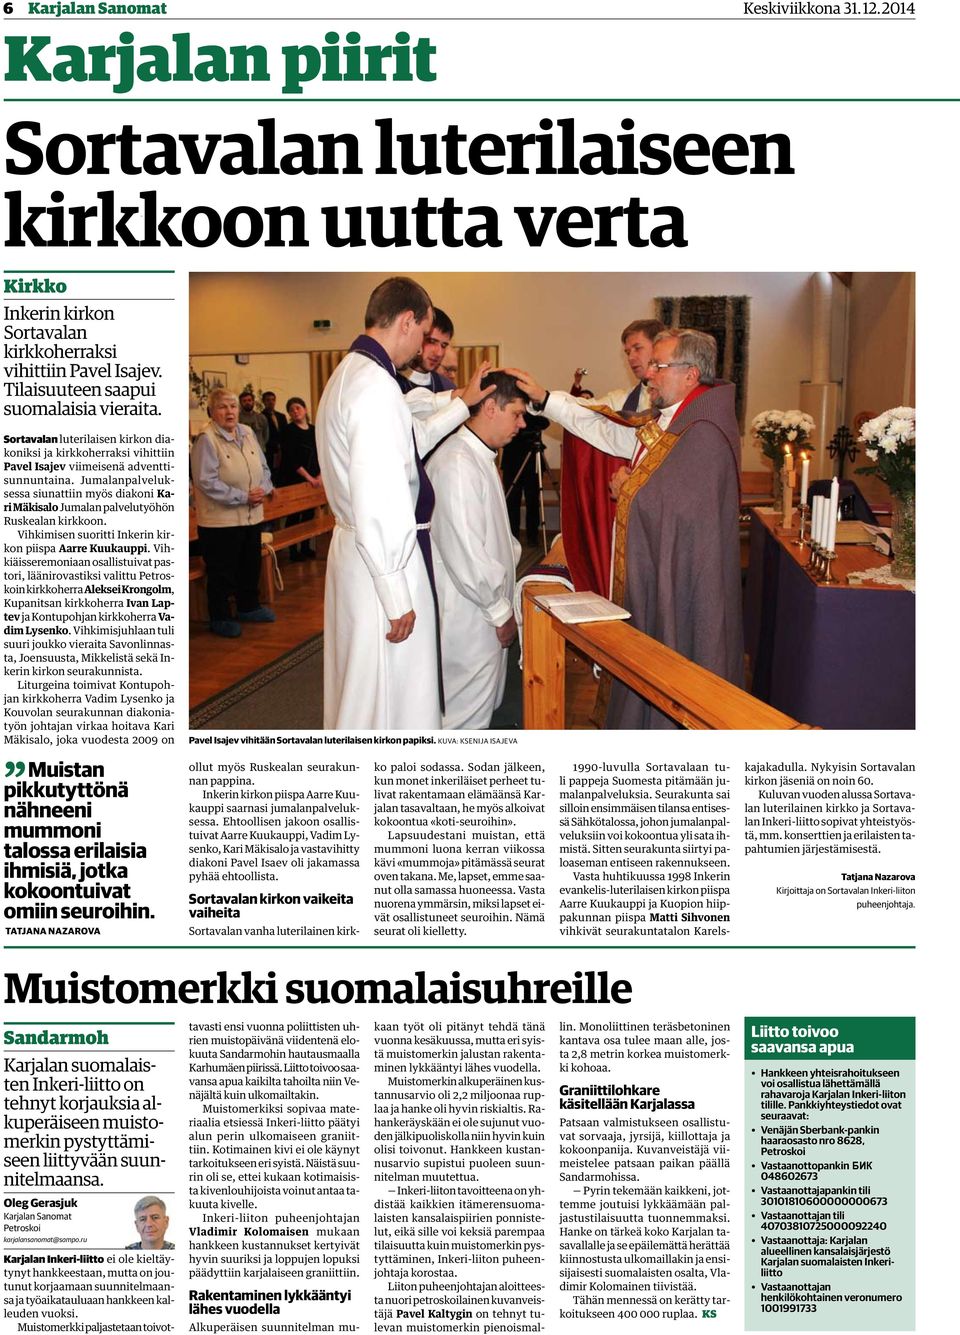 Jumalanpalveluksessa siunattiin myös diakoni Kari Mäkisalo Jumalan palvelutyöhön Ruskealan kirkkoon. Vihkimisen suoritti Inkerin kirkon piispa Aarre Kuukauppi.